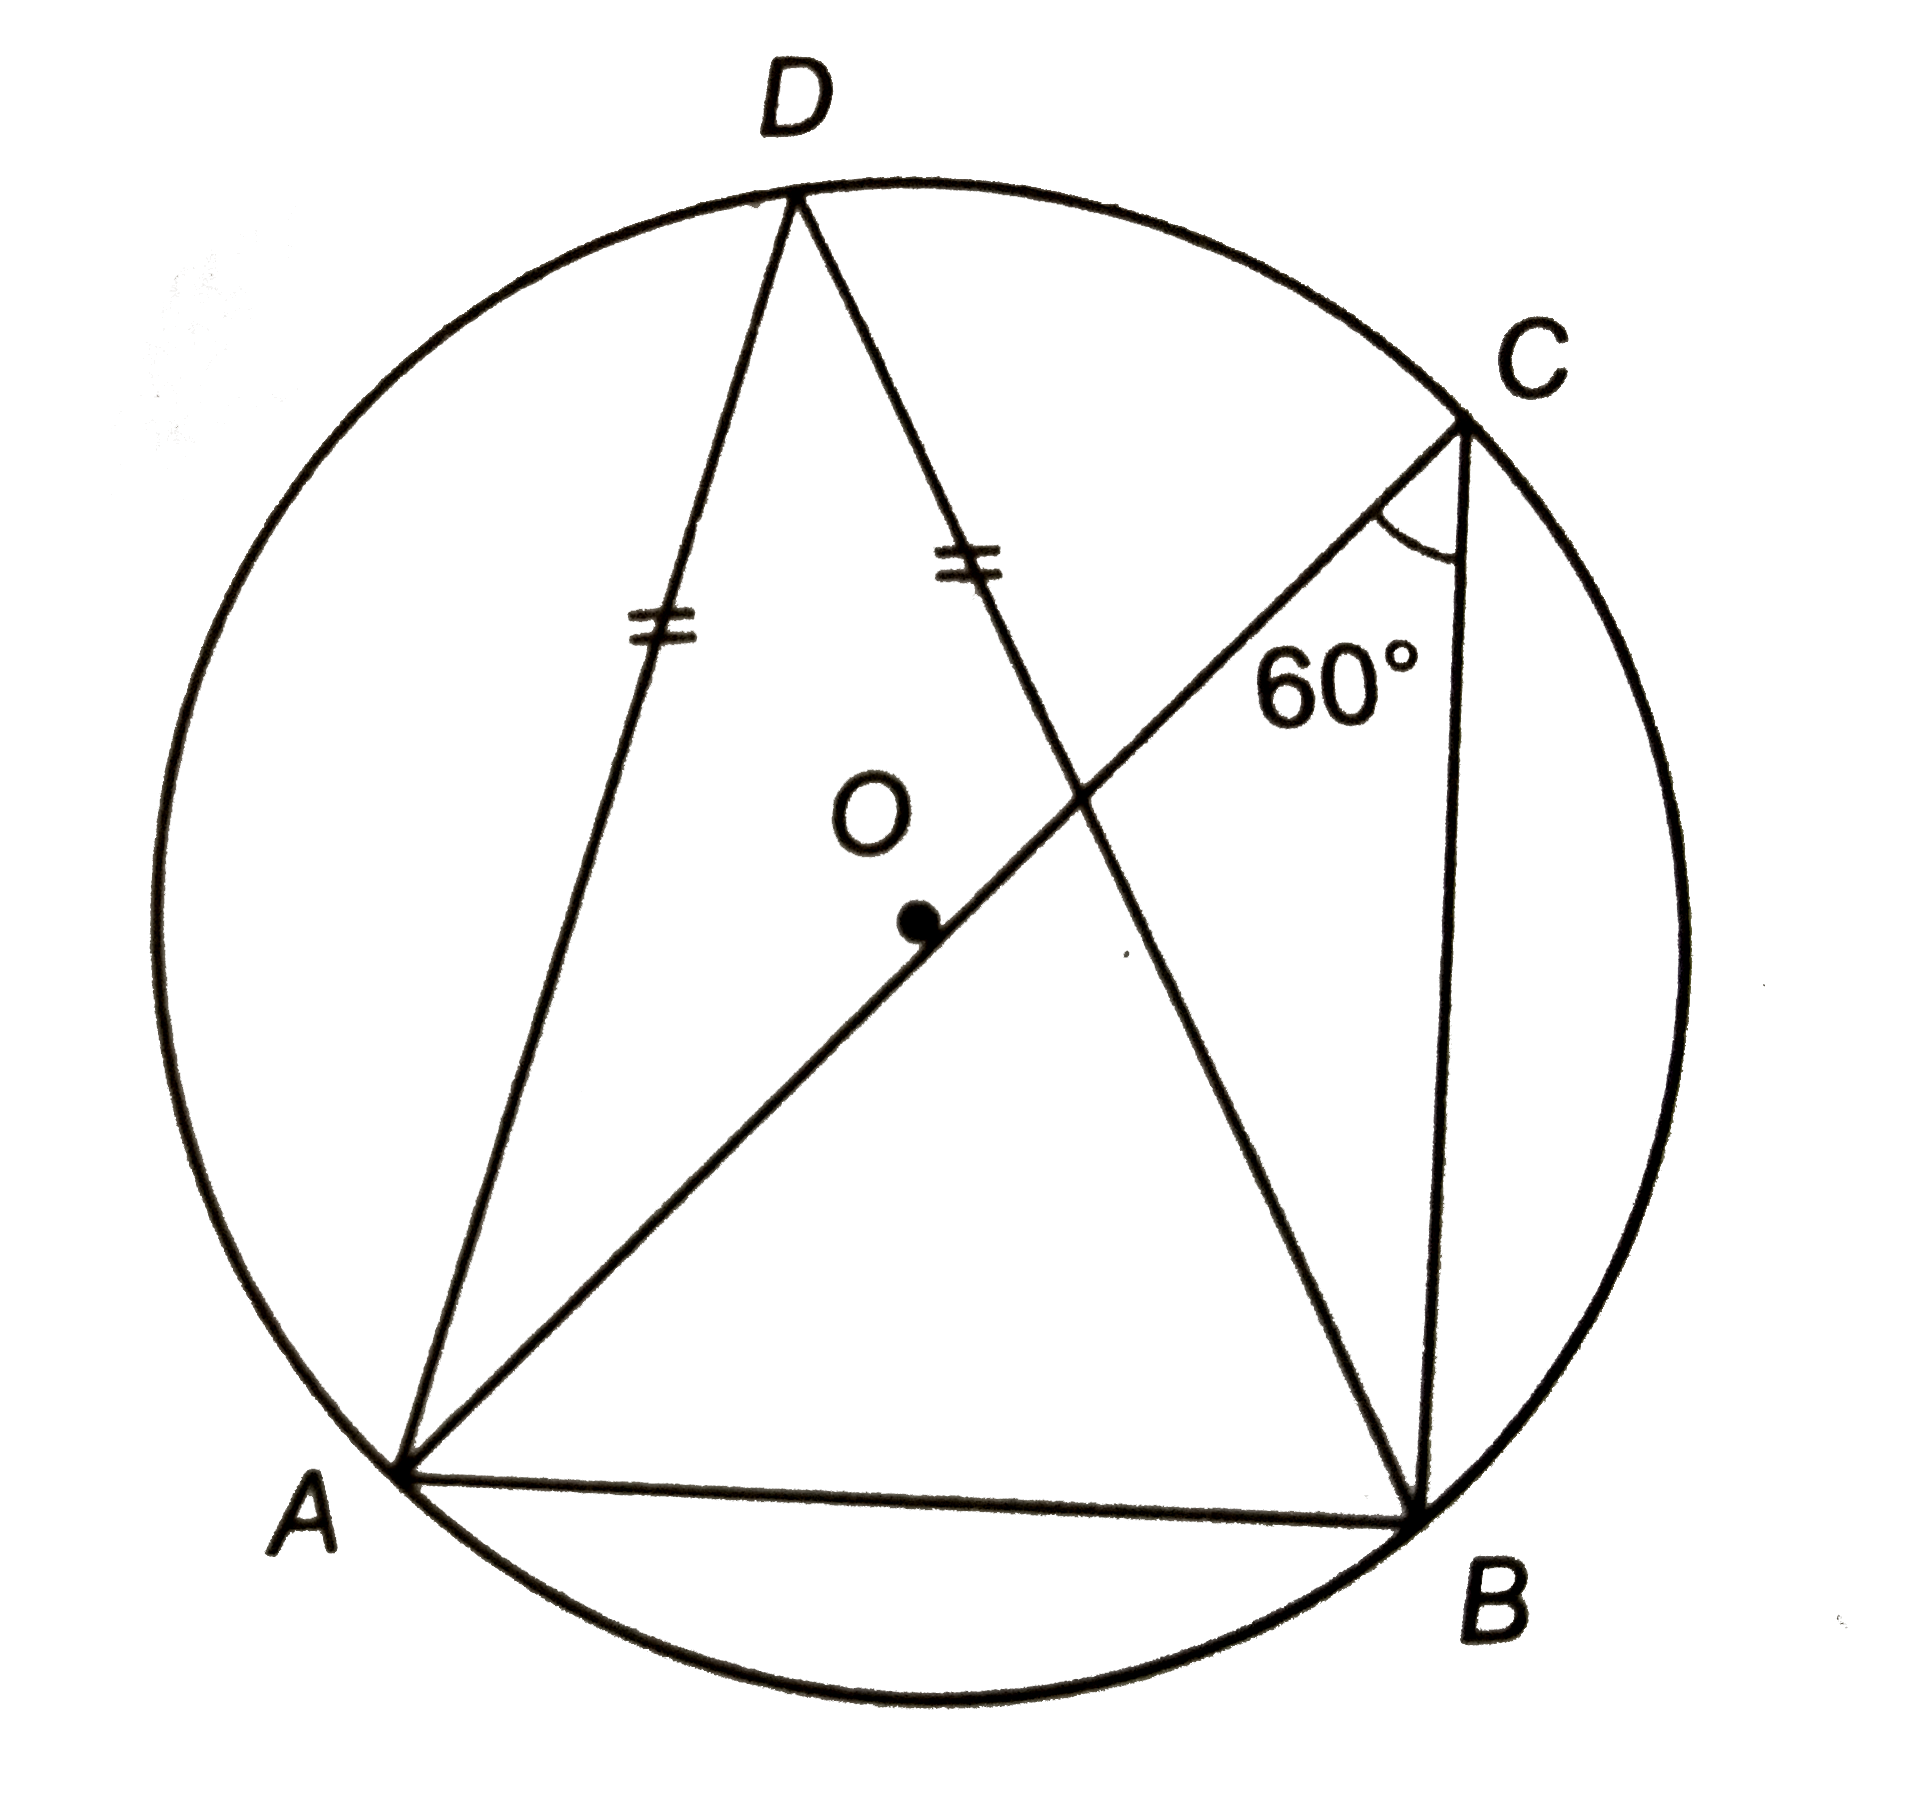 संलग्न चित्र में, 'O' वृत्त का केन्द्र है यदि angleACB=60^(@) और DA=DB, तो सिद्ध कीजिए कि DeltaADB एक समबाहु त्रिभुज है |